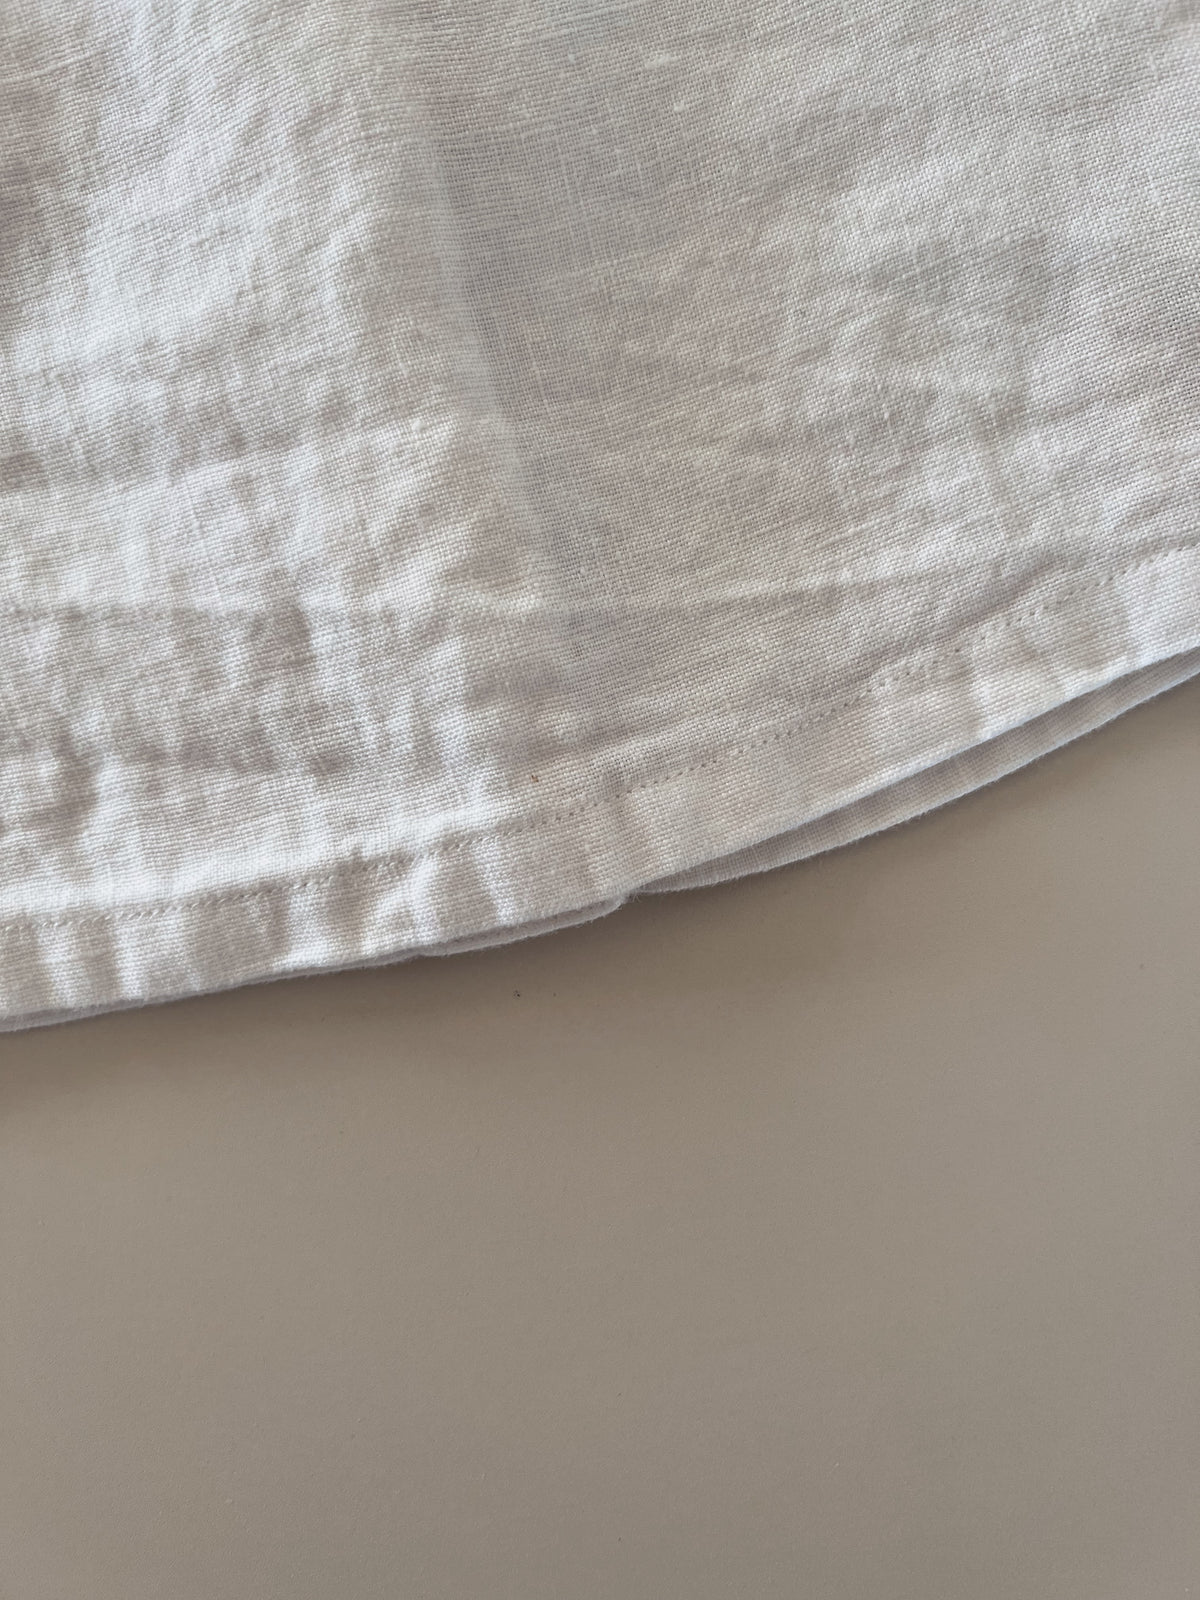 White linen singlet 6-12 months (pre loved)